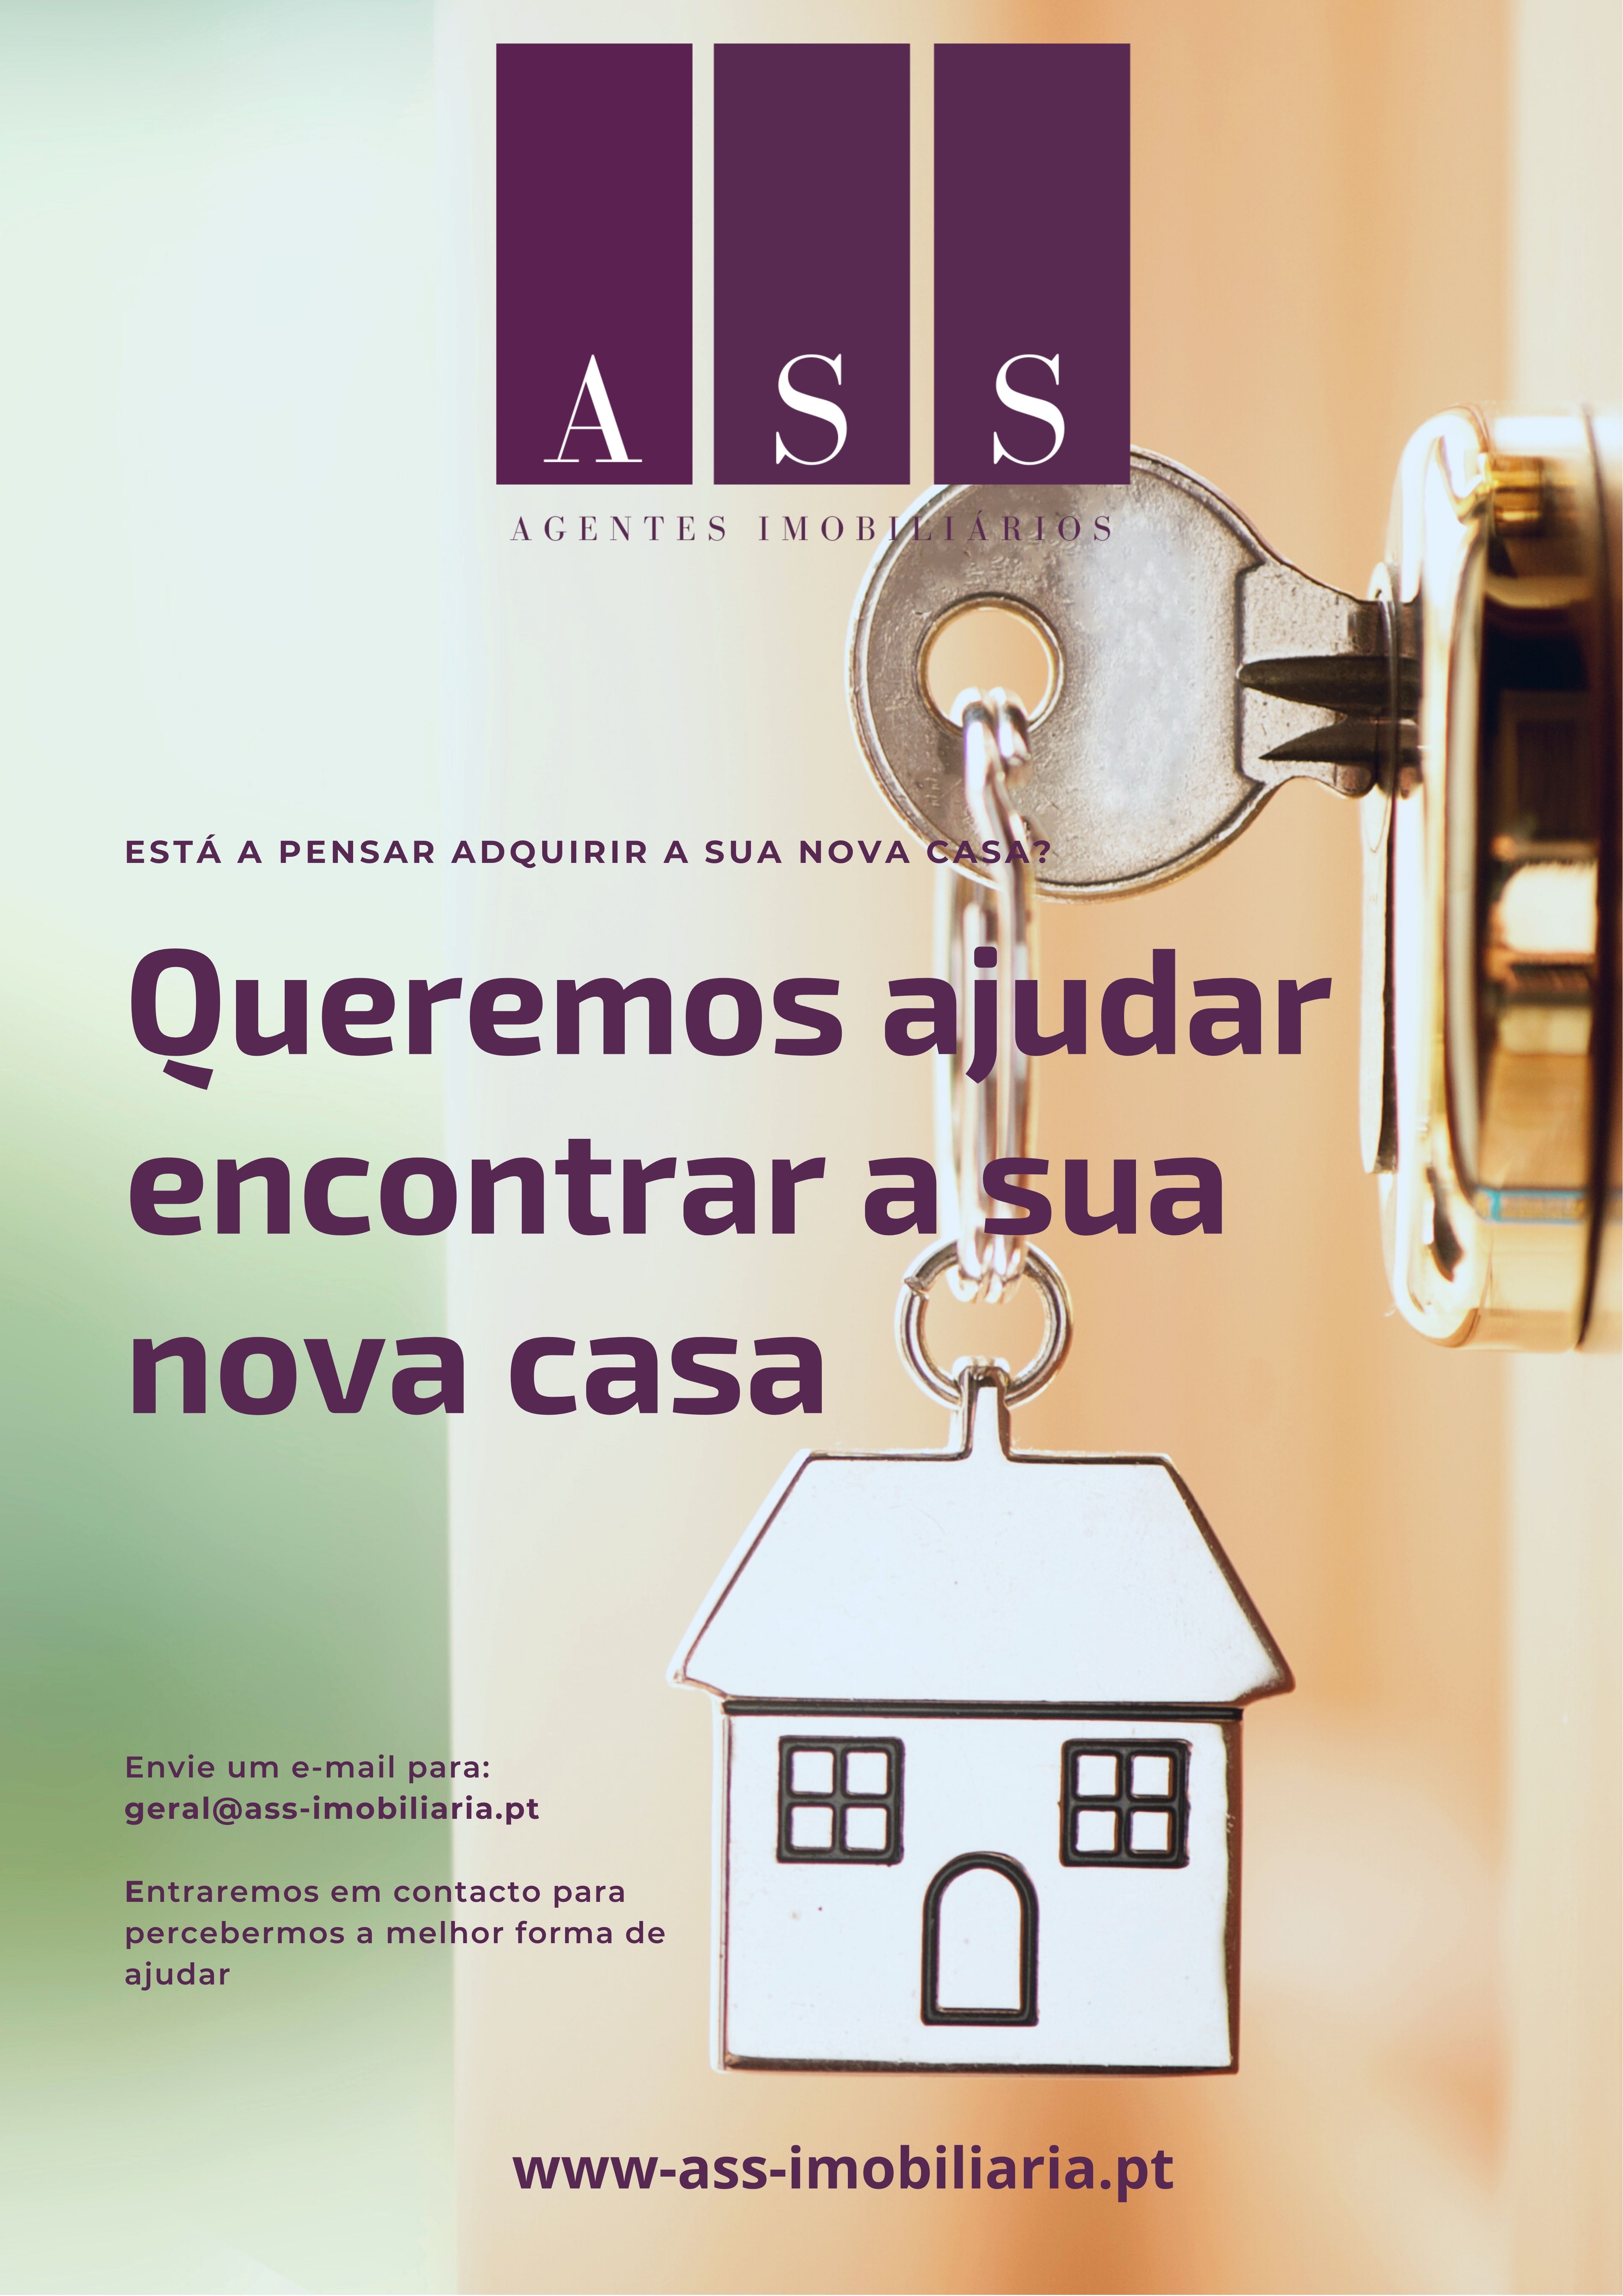 Images A.S.S - Agentes imobiliários